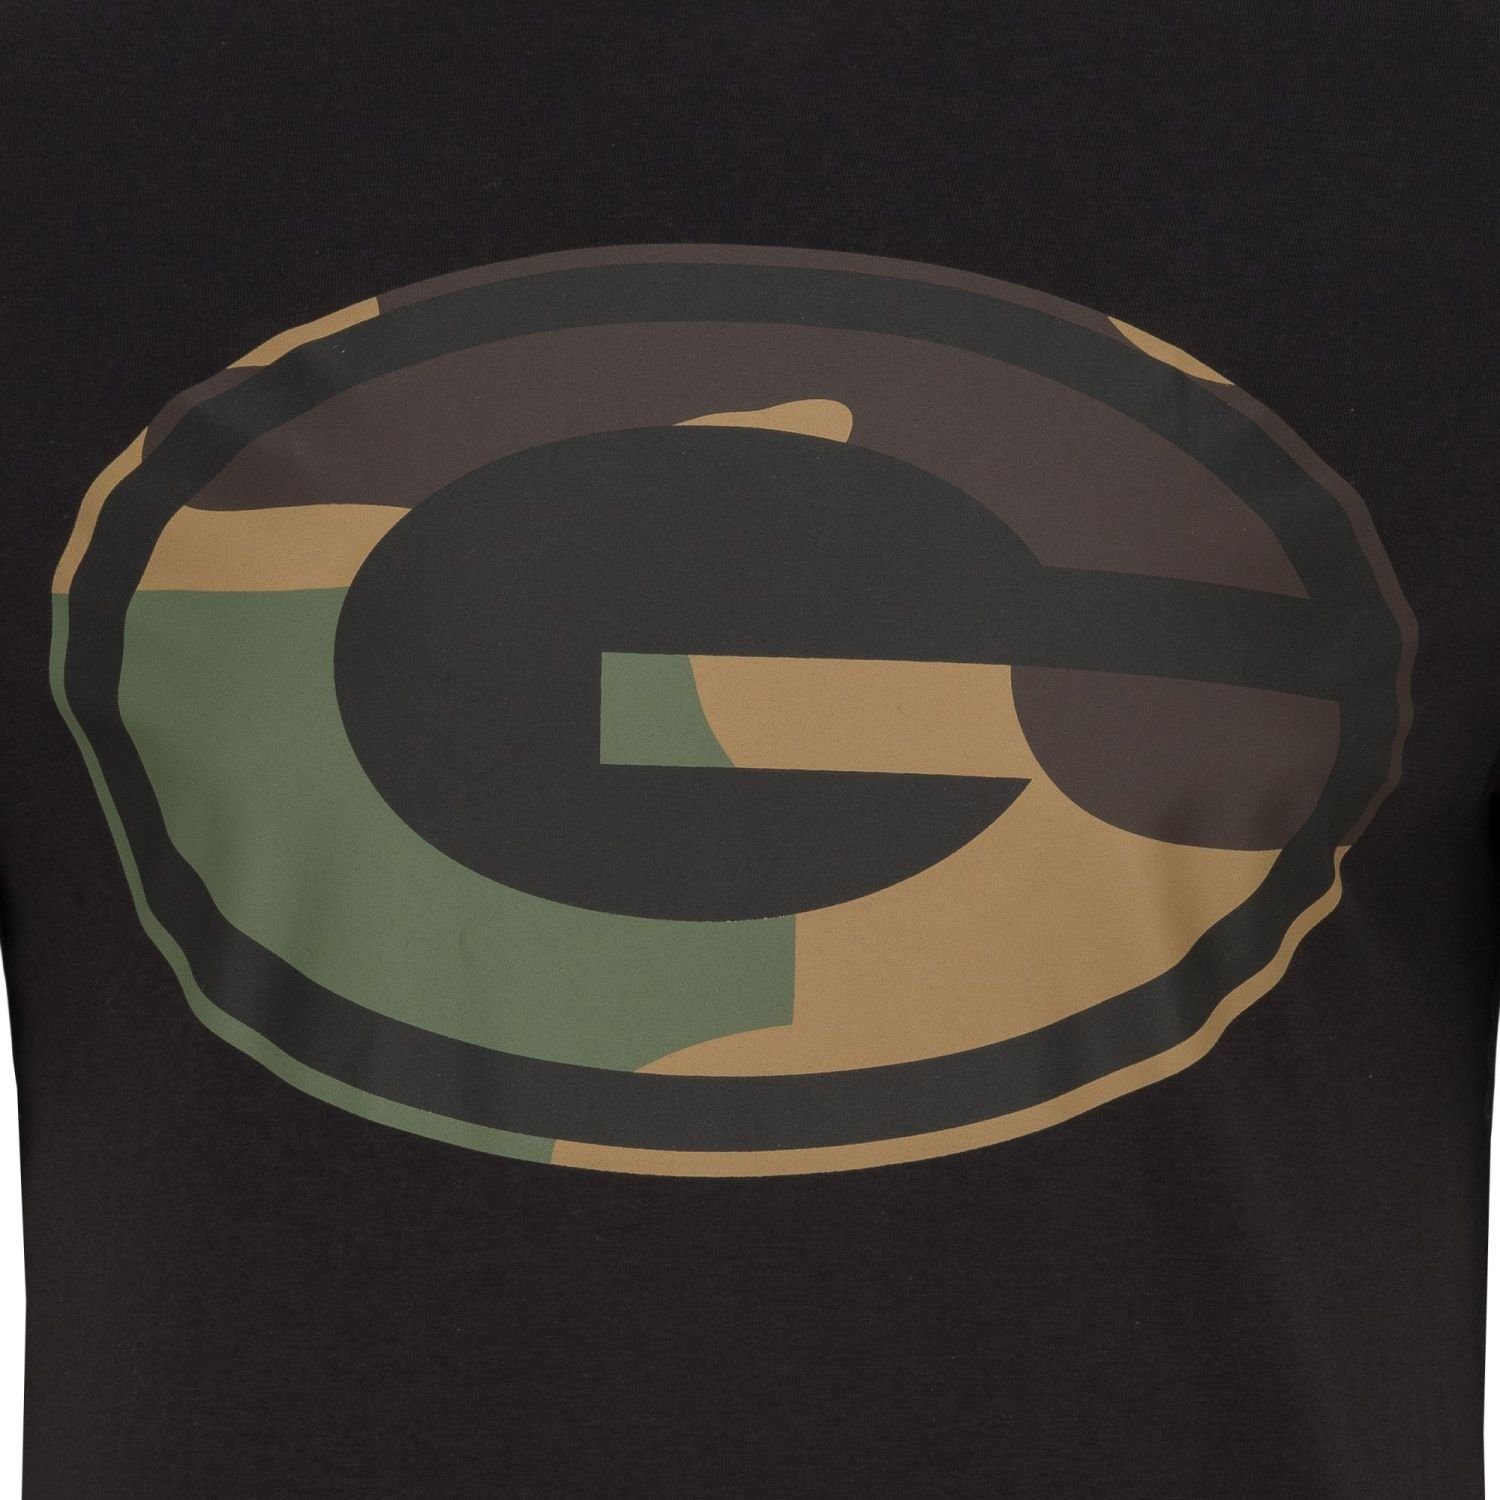 New Era Print-Shirt Green Football Teams Packers Bay 2.0 NFL